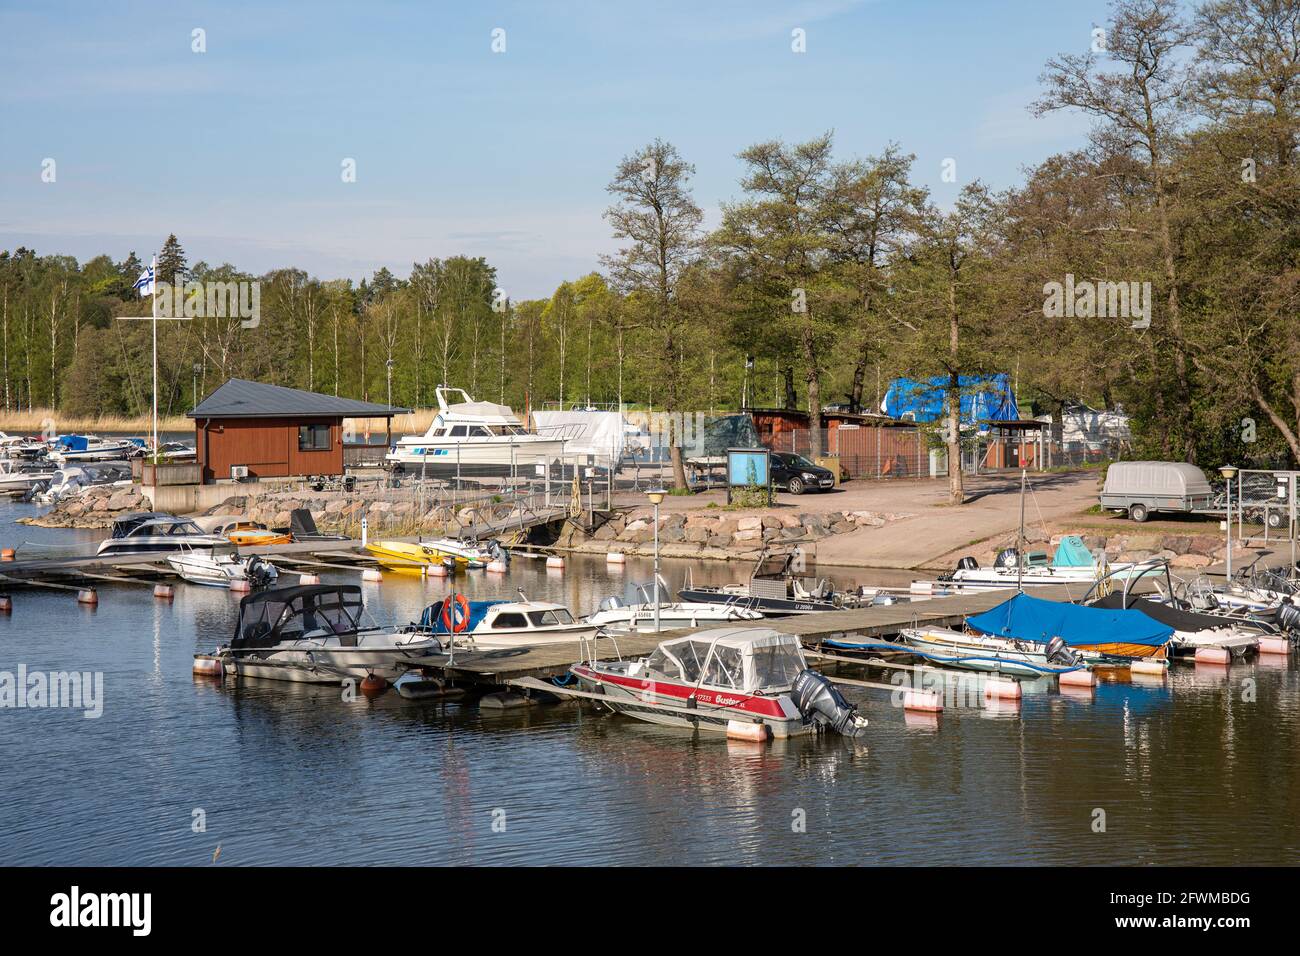 Munkan venekerho jetties y barcos en Ramsaynranta en el distrito de Munkkiniemi de Helsinki, Finlandia. También el lugar de asesinato de Satu Sallinen en 1997. Foto de stock